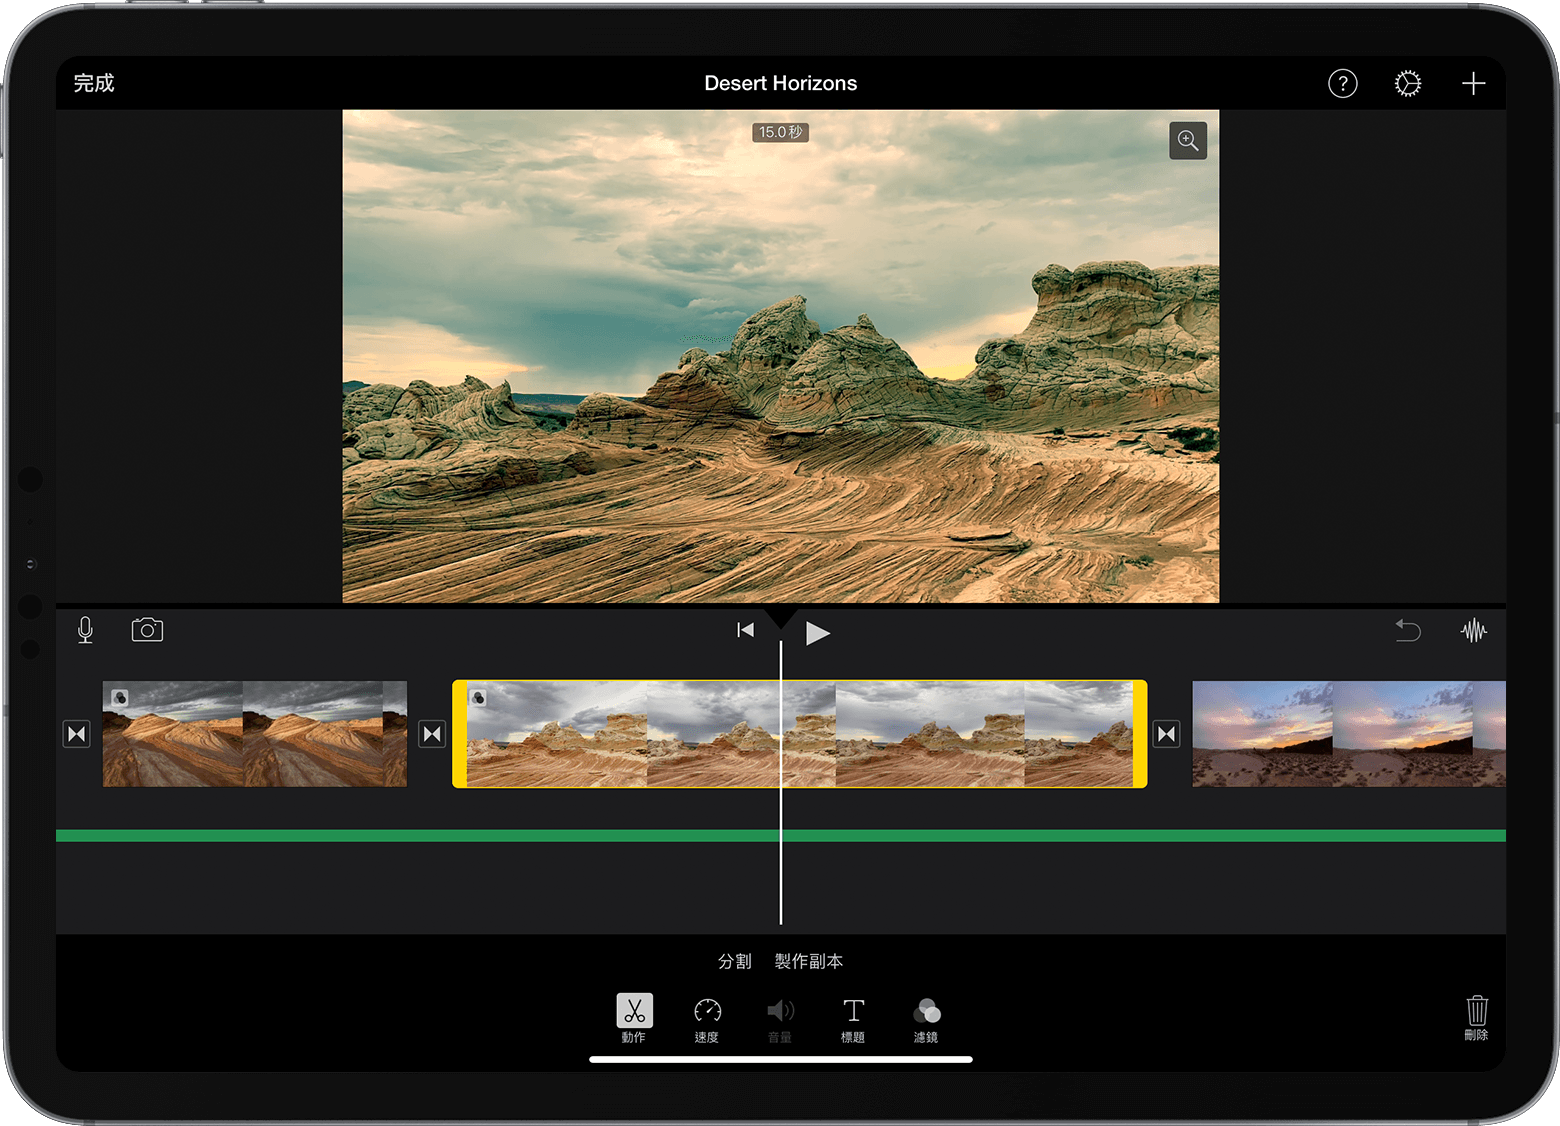 開啟了 iPad 版 iMovie 專案，並在時間軸中選取了一段影片剪輯片段